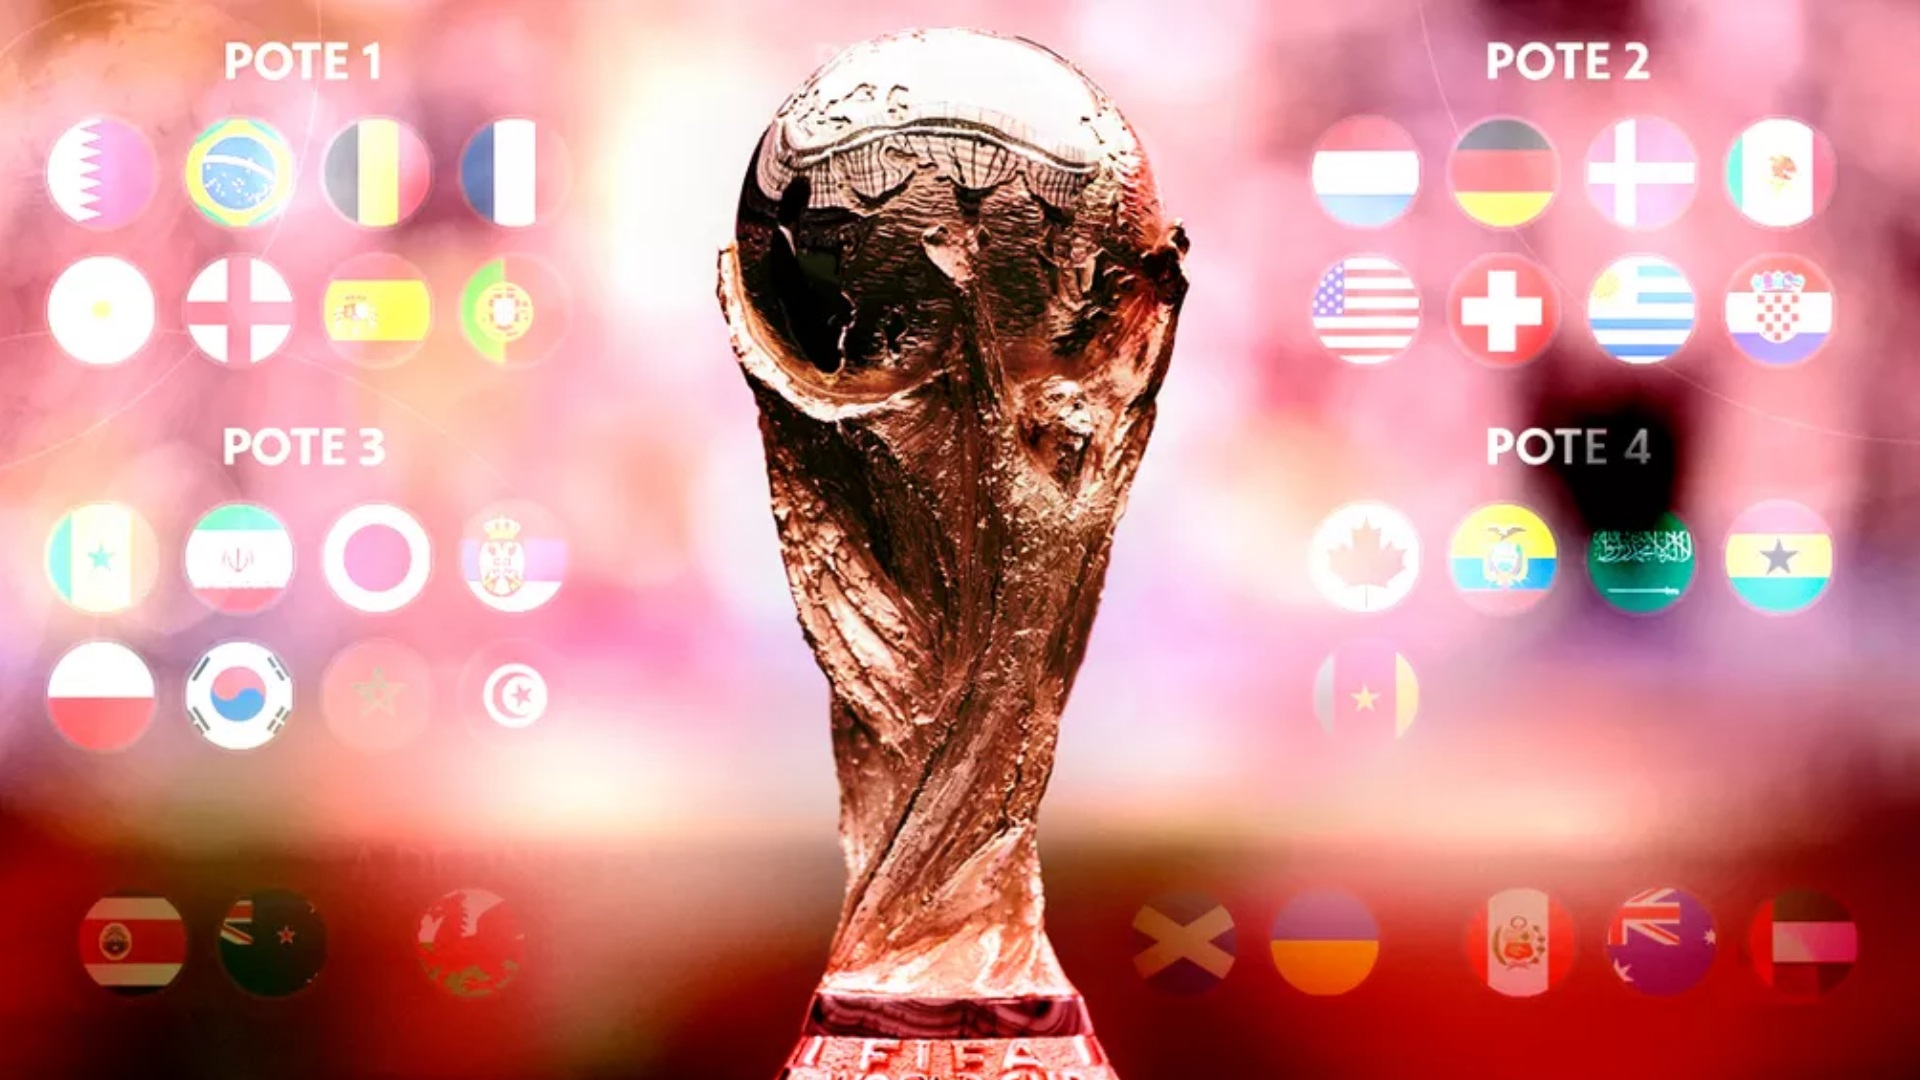 Sorteio - Grupos - Copa do Mundo - Russia 2018 